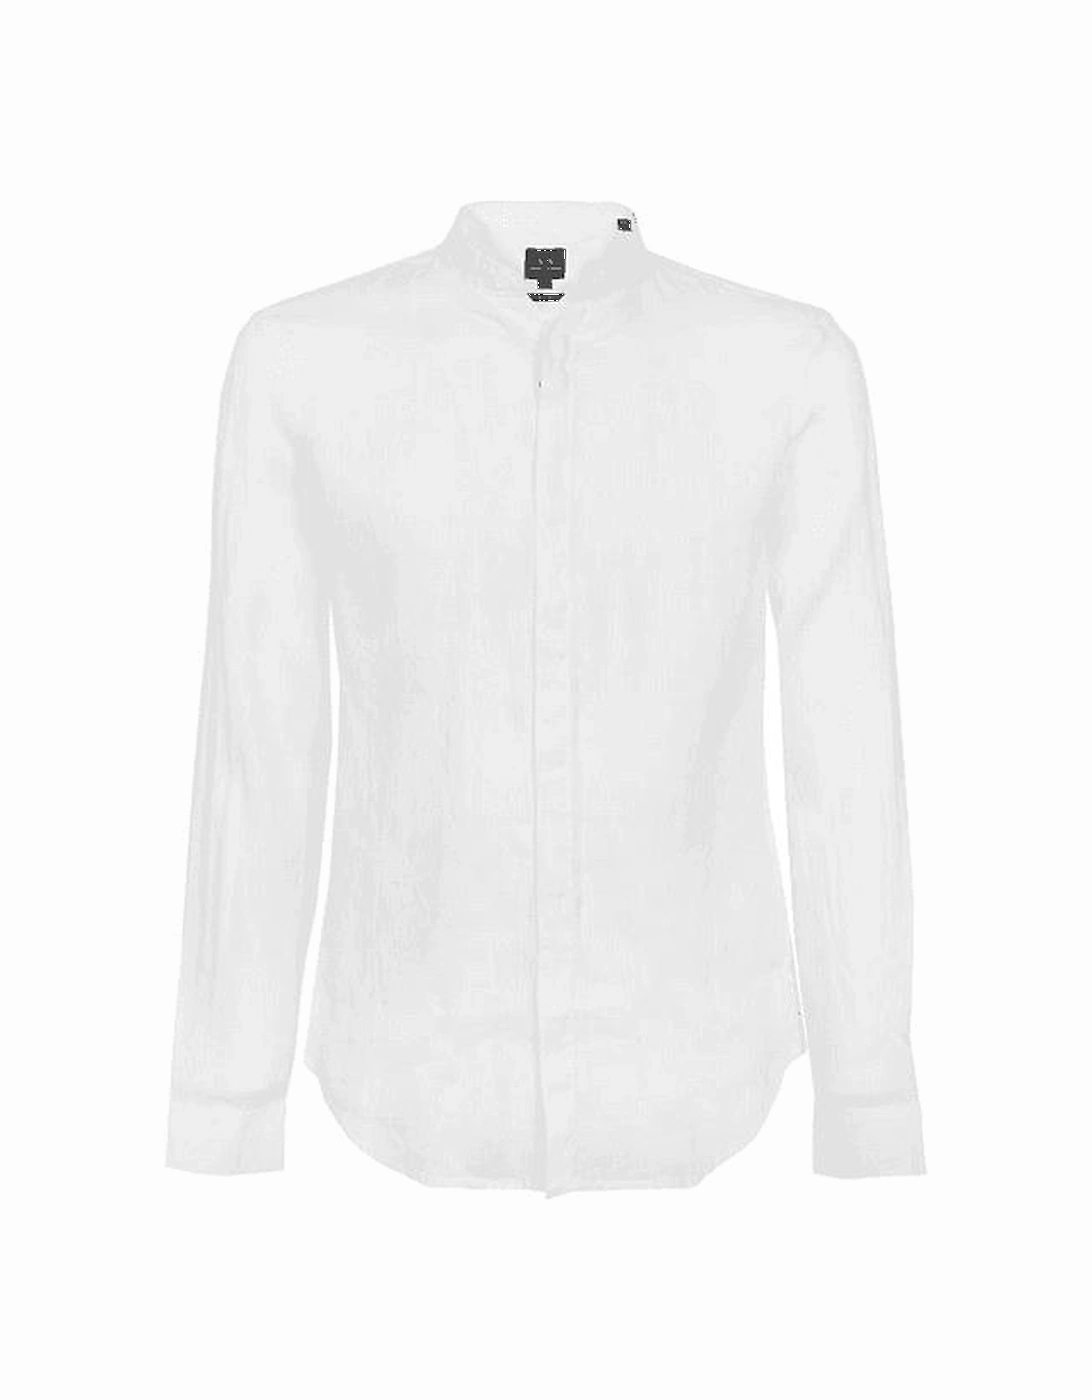 Woven White Button Up Linen Shirt, 4 of 3